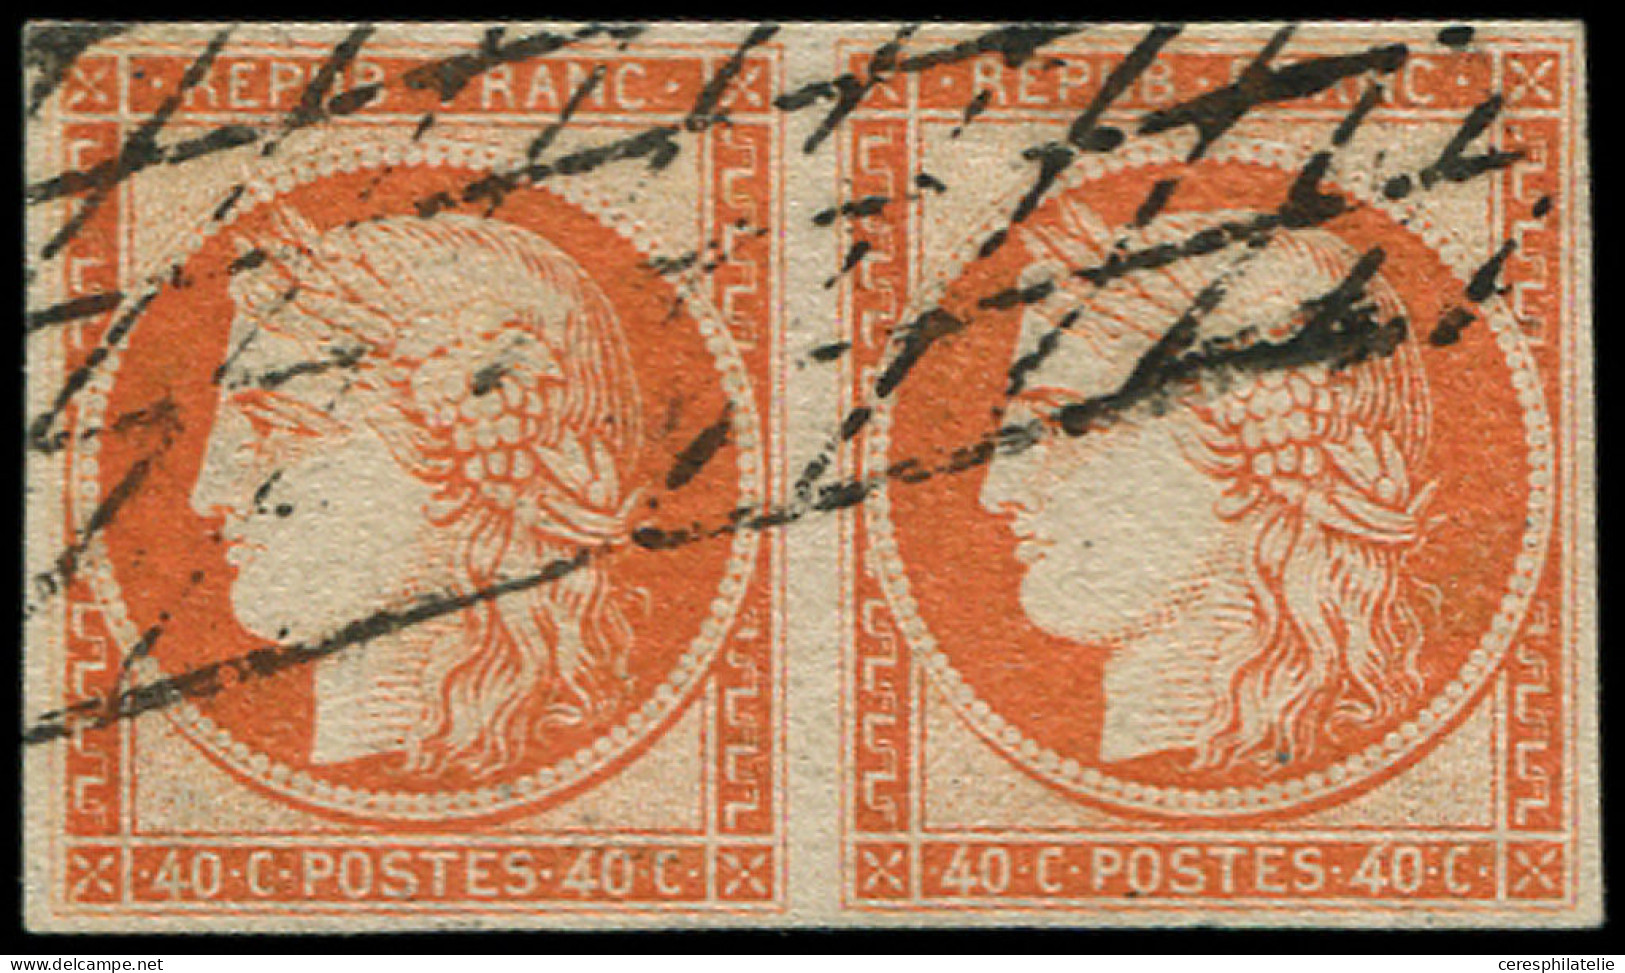 EMISSION DE 1849 - 5    40c. Orange, PAIRE Obl. GRILLE SANS FIN, TB - 1849-1850 Ceres